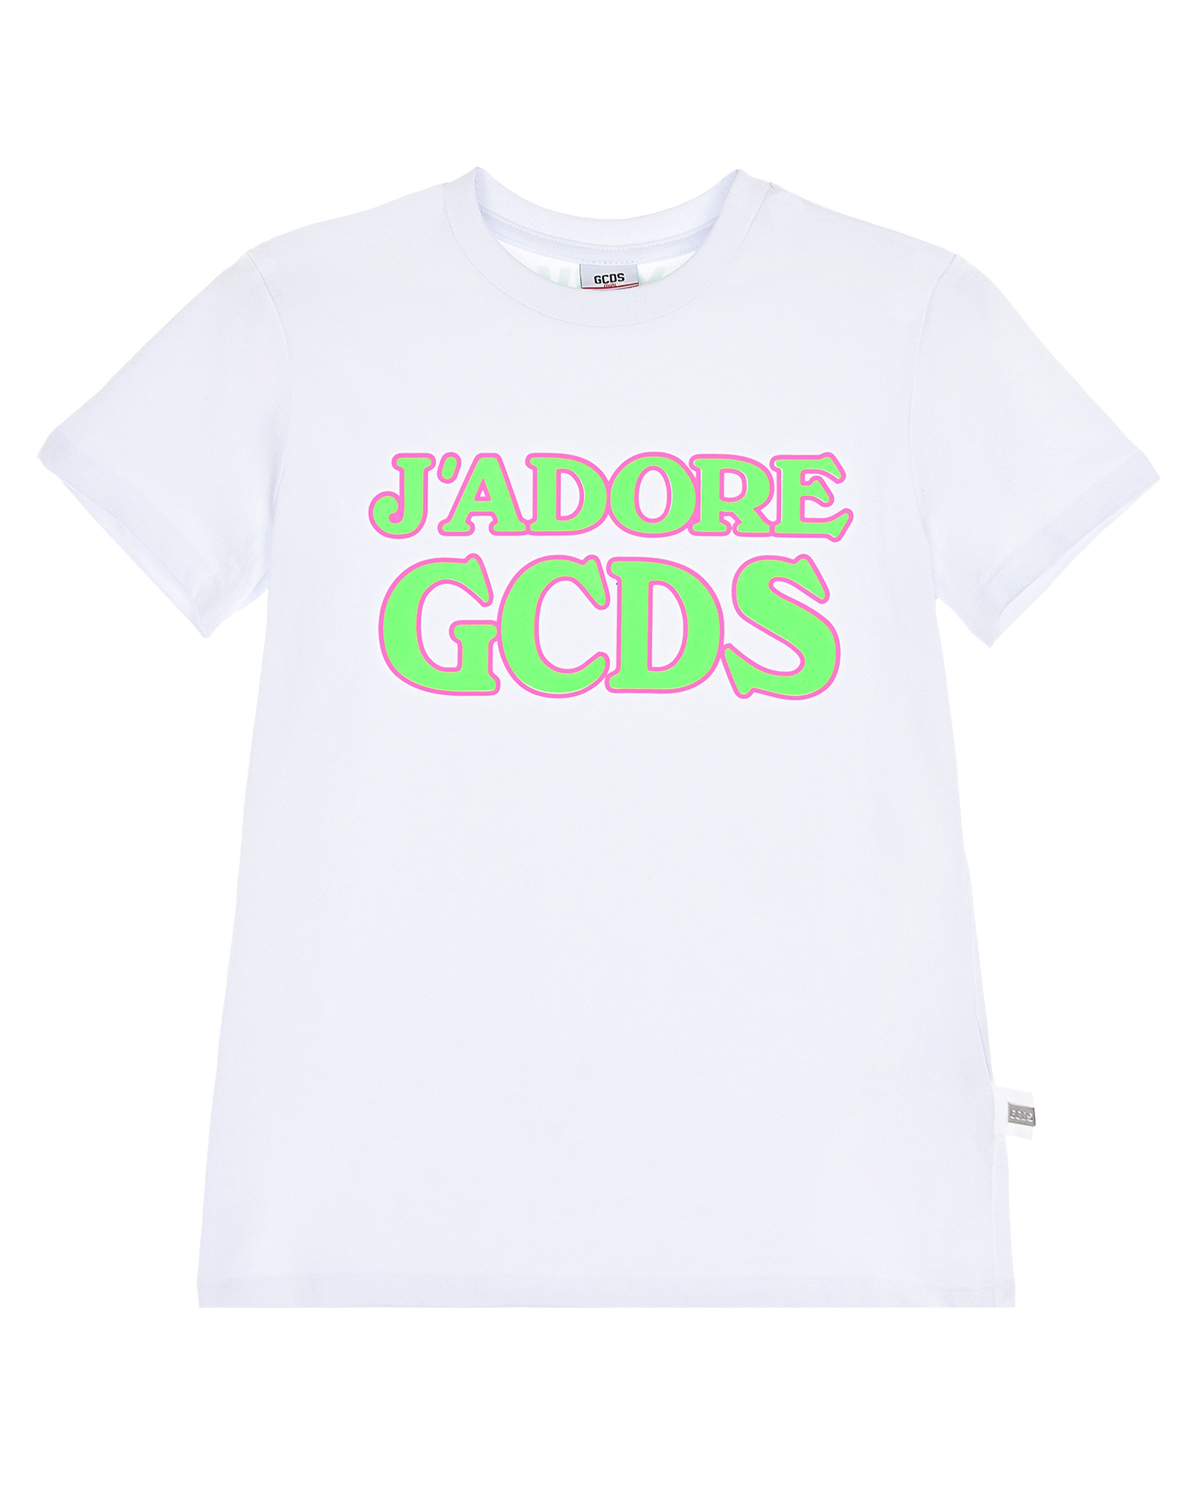 Белая футболка с надписью "Jadore" GCDS детская